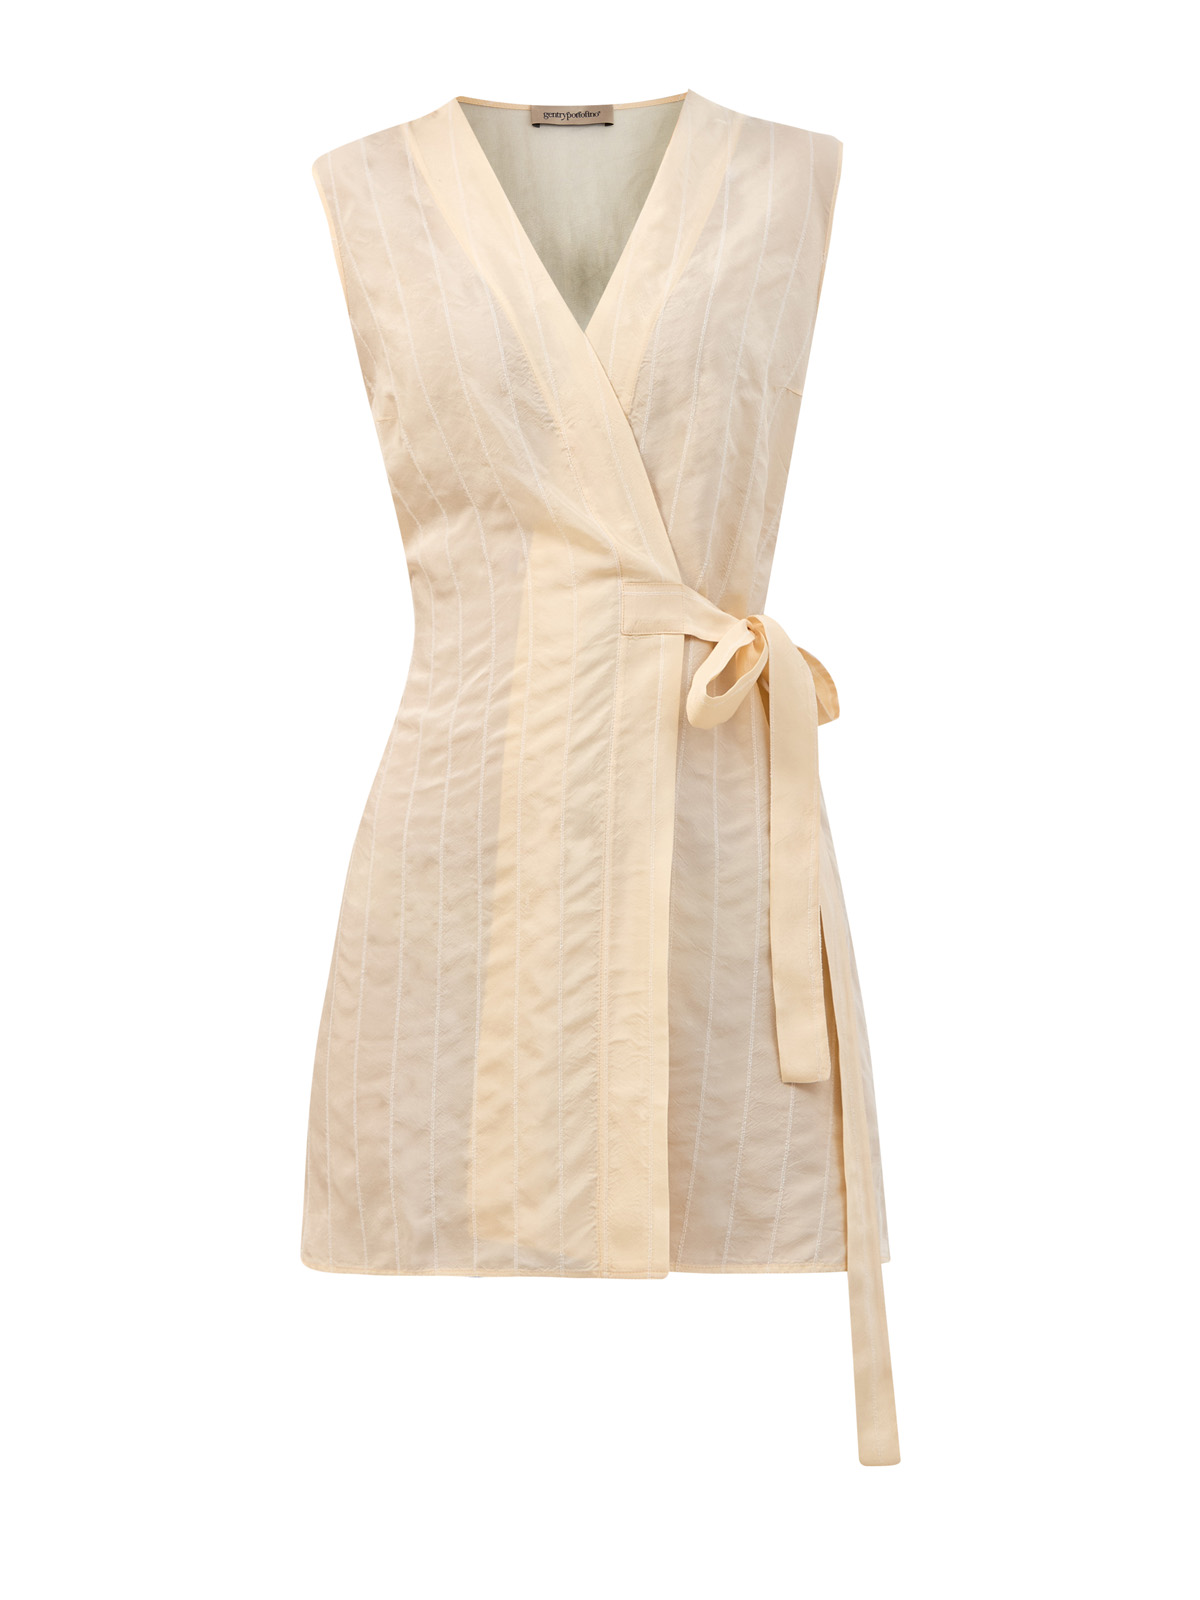 Легкая блуза без рукавов с фактурной прострочкой и поясом-лентой